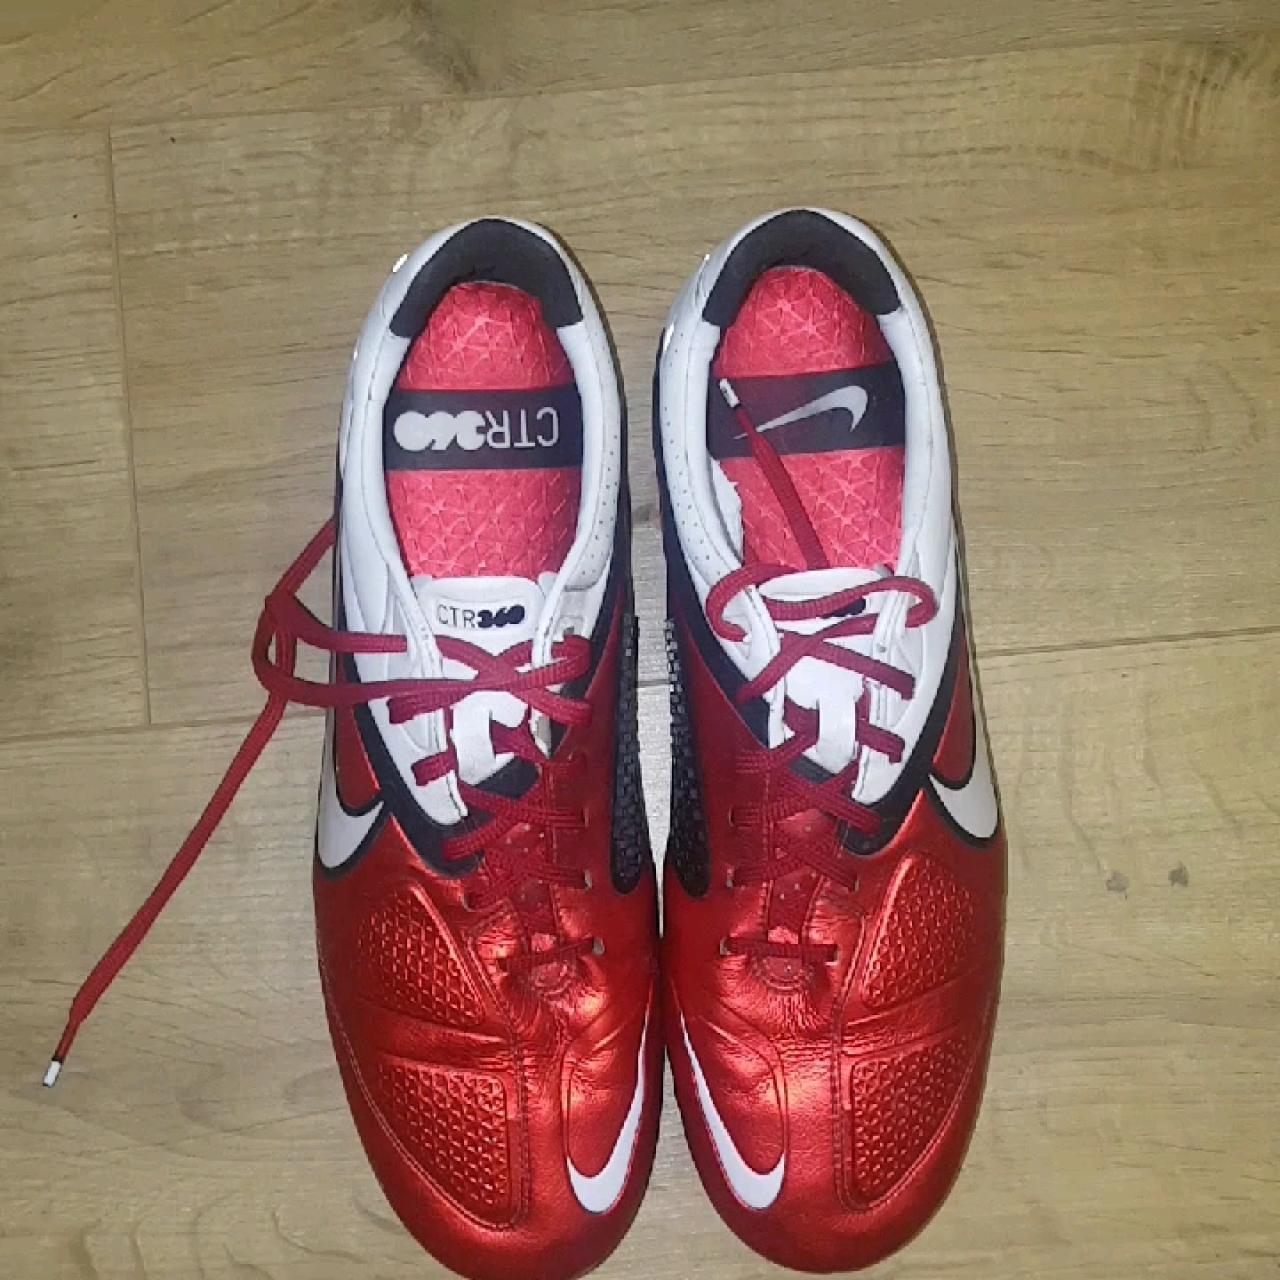 Nike CTR 360 FG Retro Football Boots 